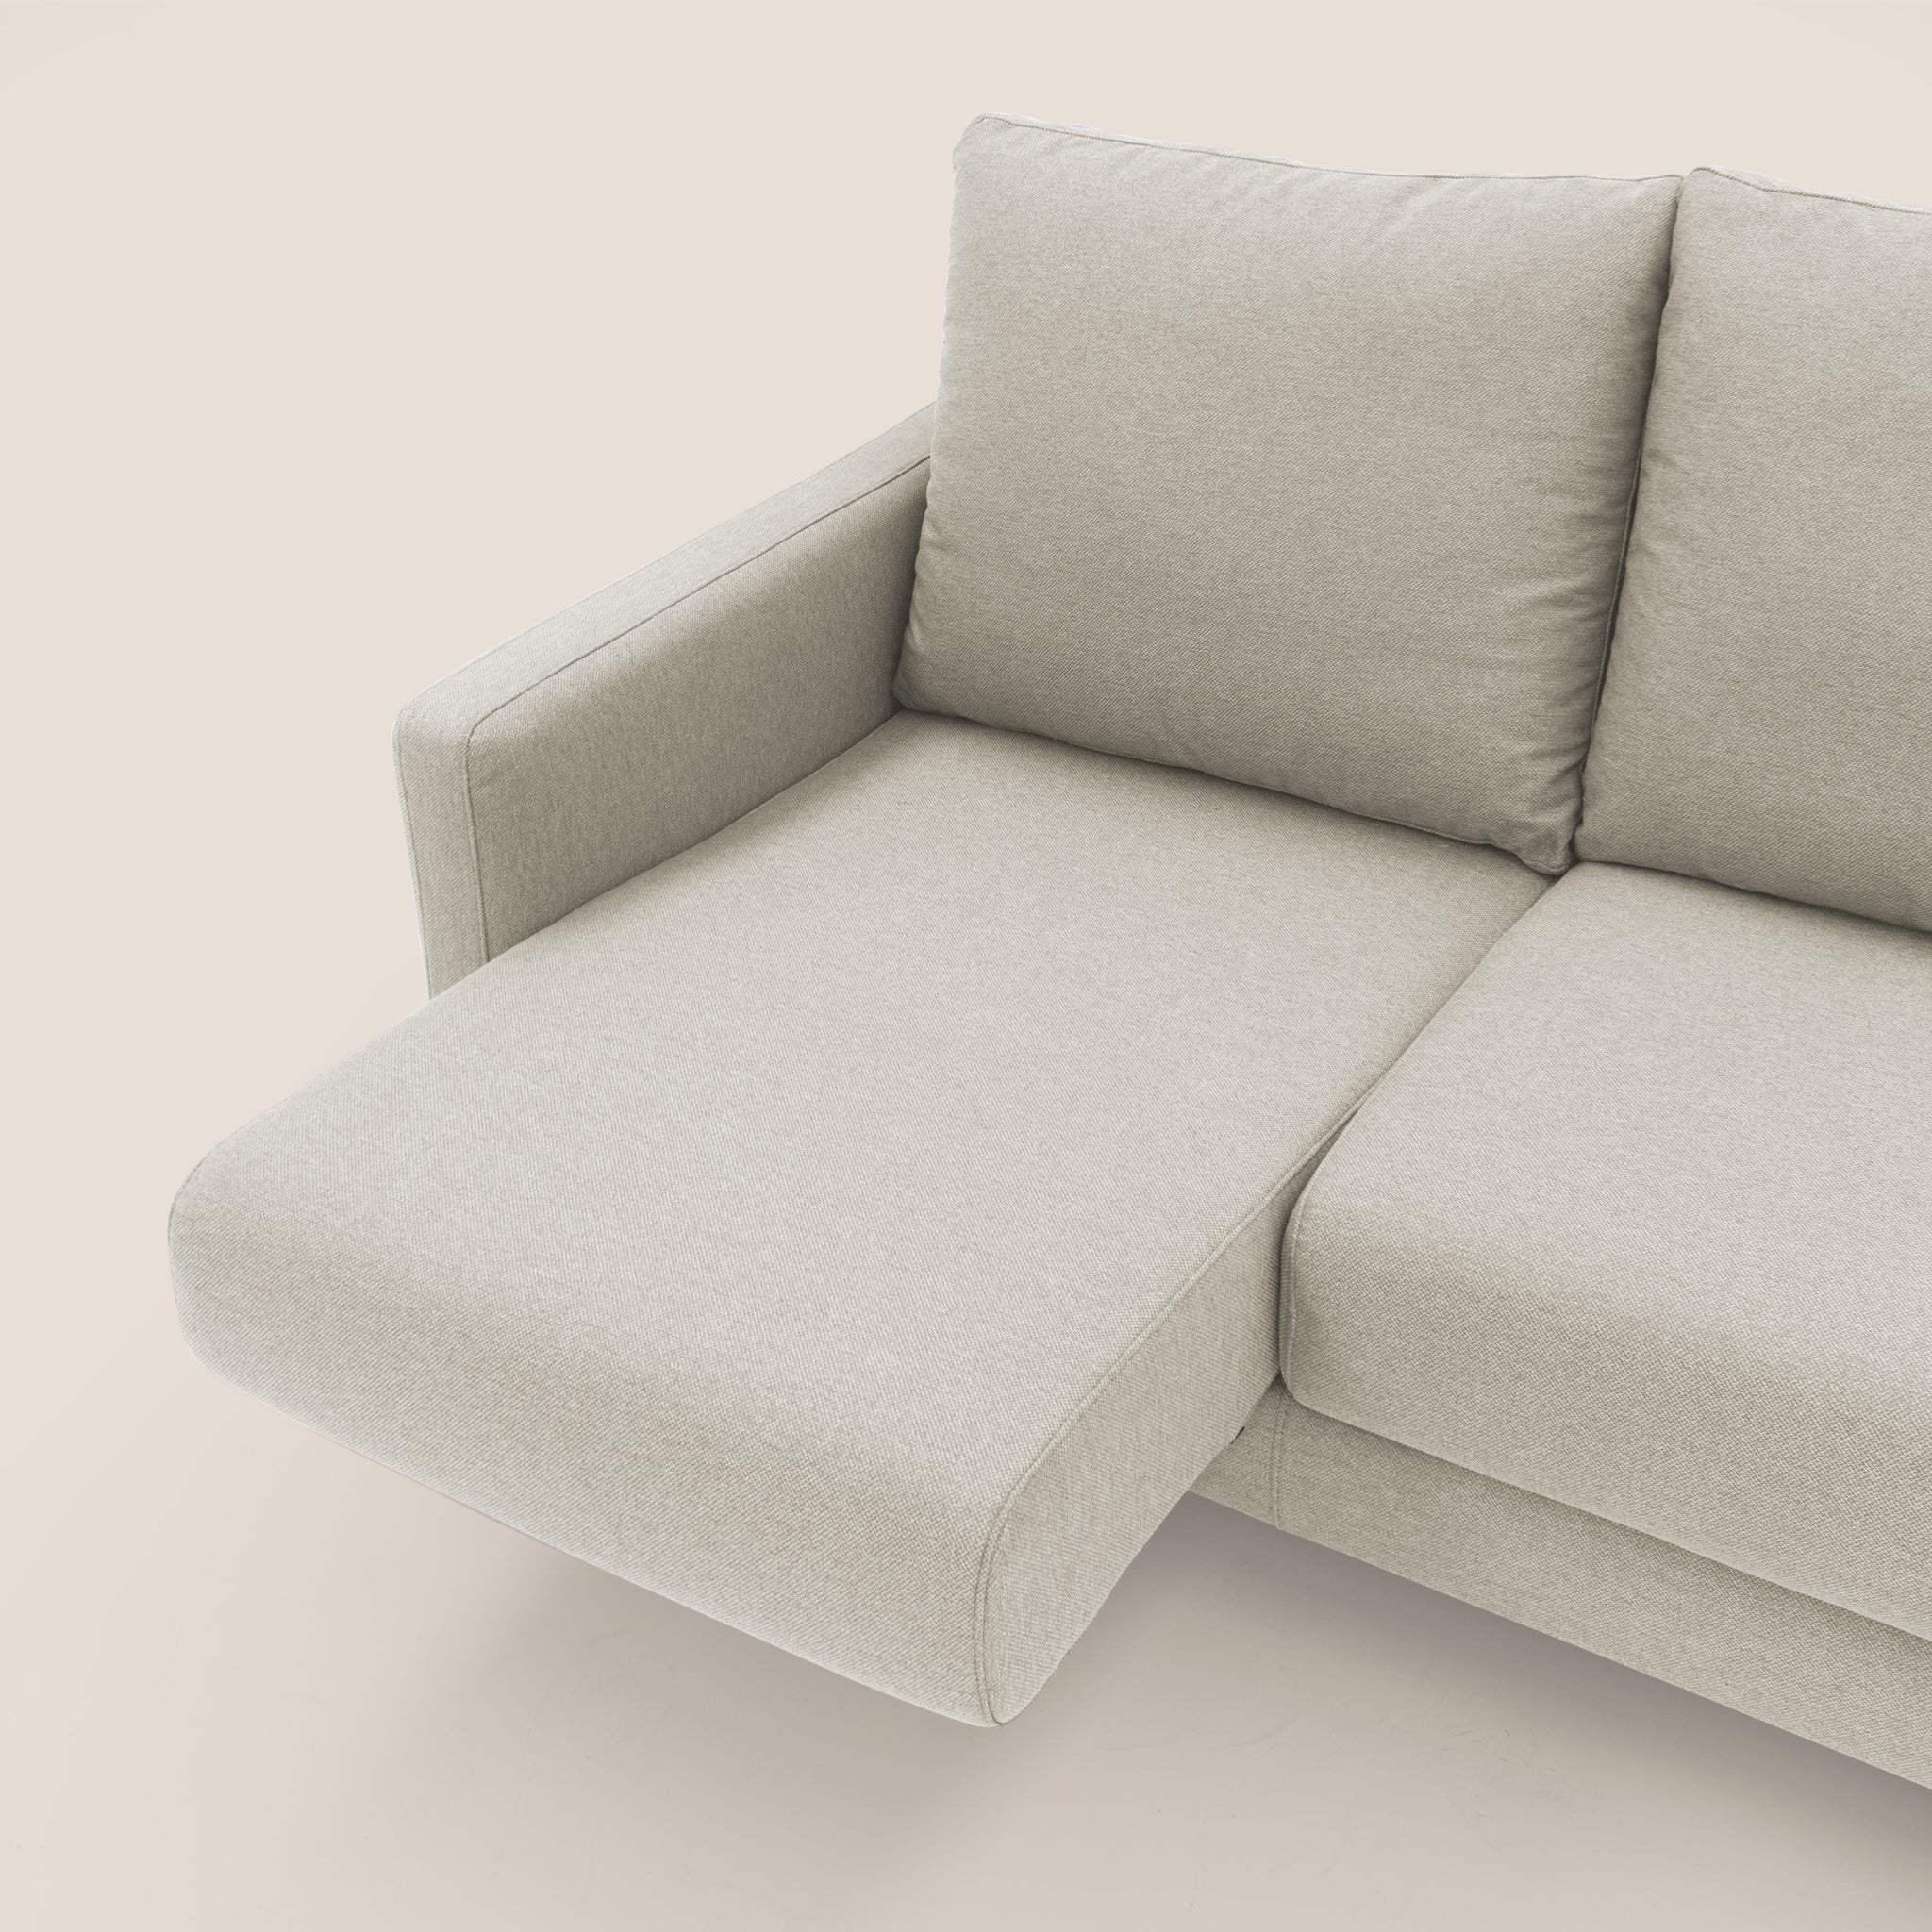 Klimt divano con 3 sedute allungabili e schienali in piuma d'oca in tessuto smacchiabile T05